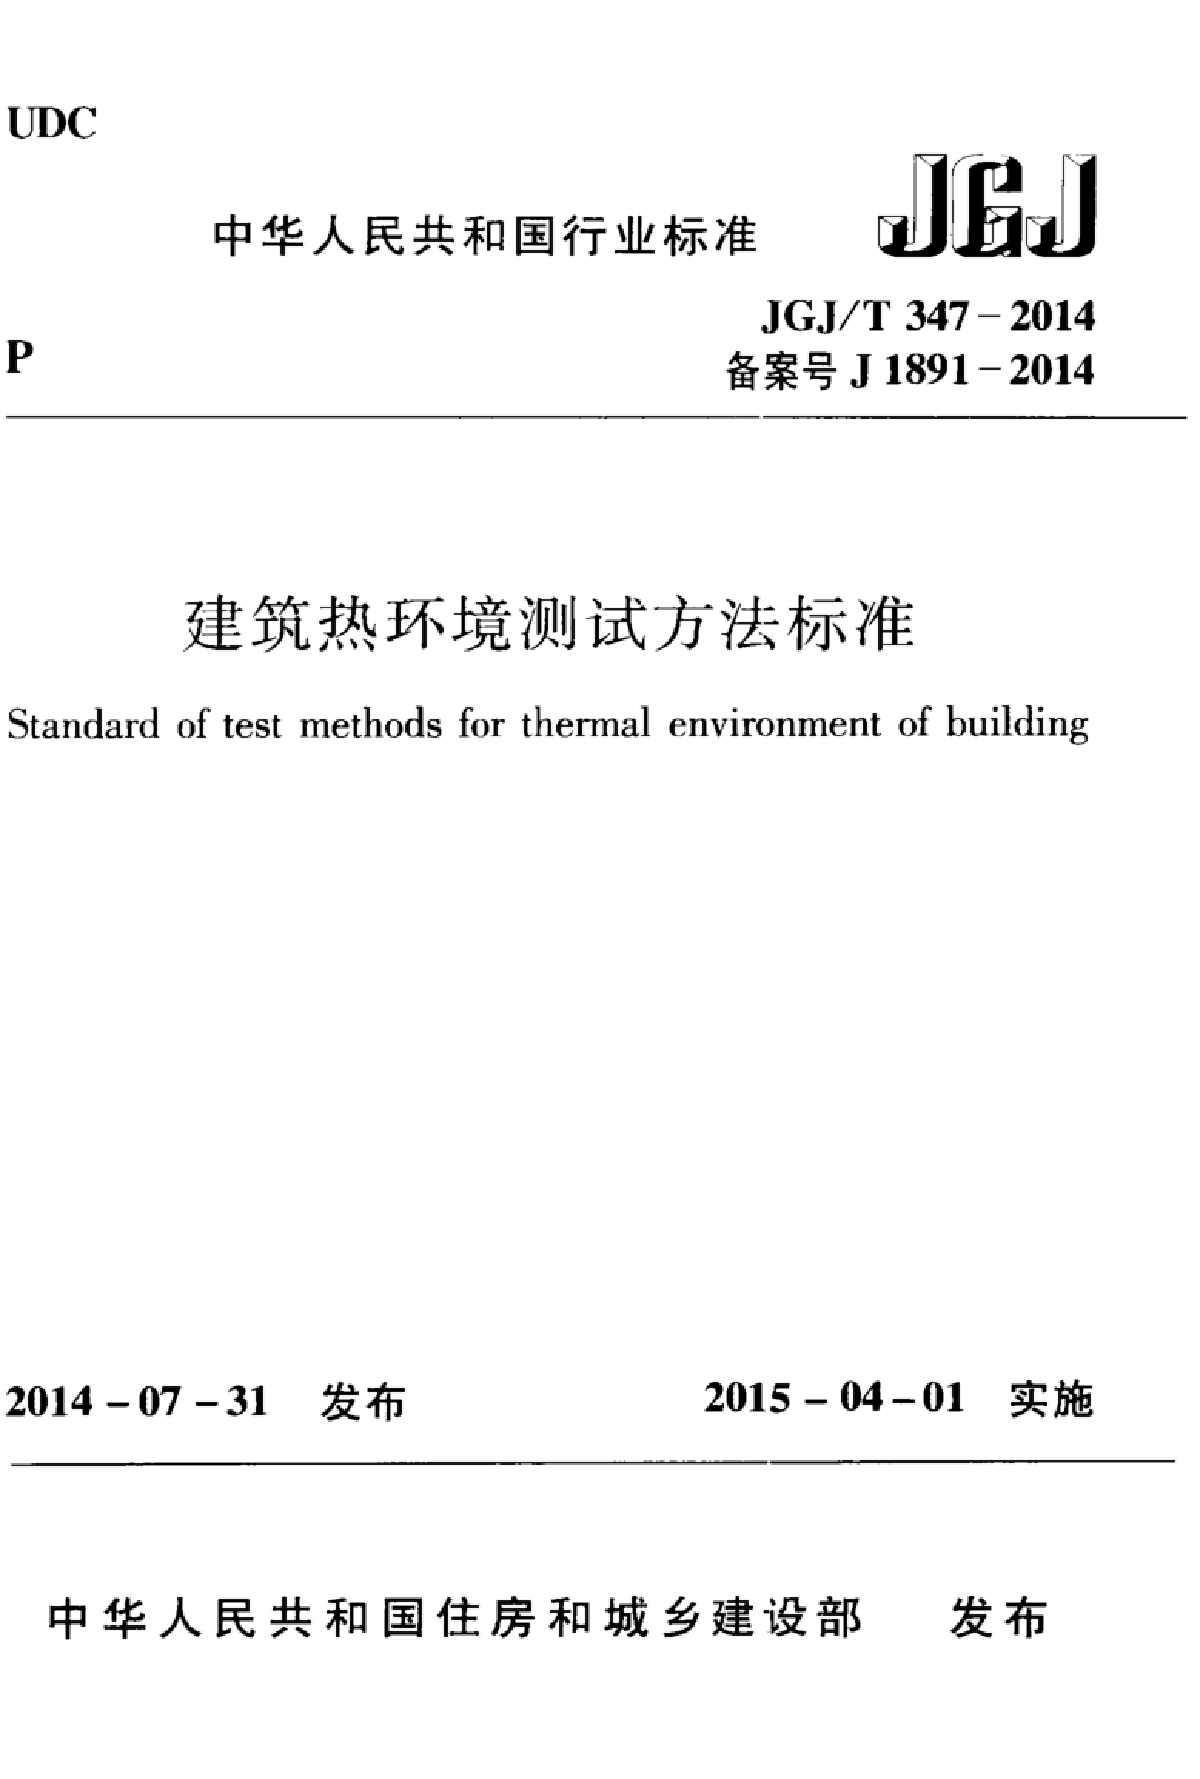 JGJT347-2014建筑热环境测试方法标准